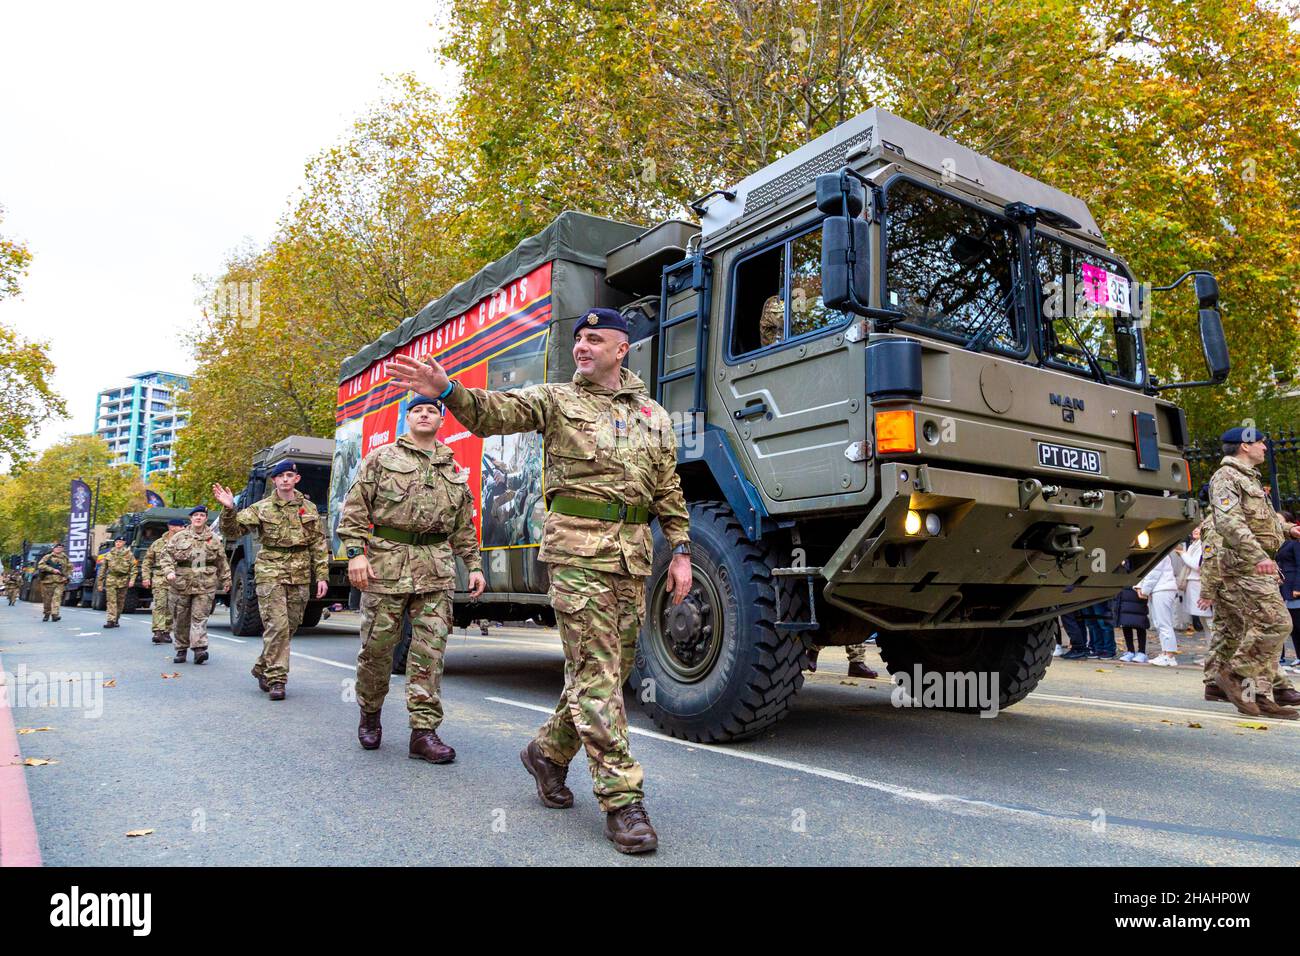 13 novembre 2021, Londres, Royaume-Uni - Lord Mayor's Show, le Royal Logistic corps marchant à côté d'un CAMION D'HOMME Banque D'Images